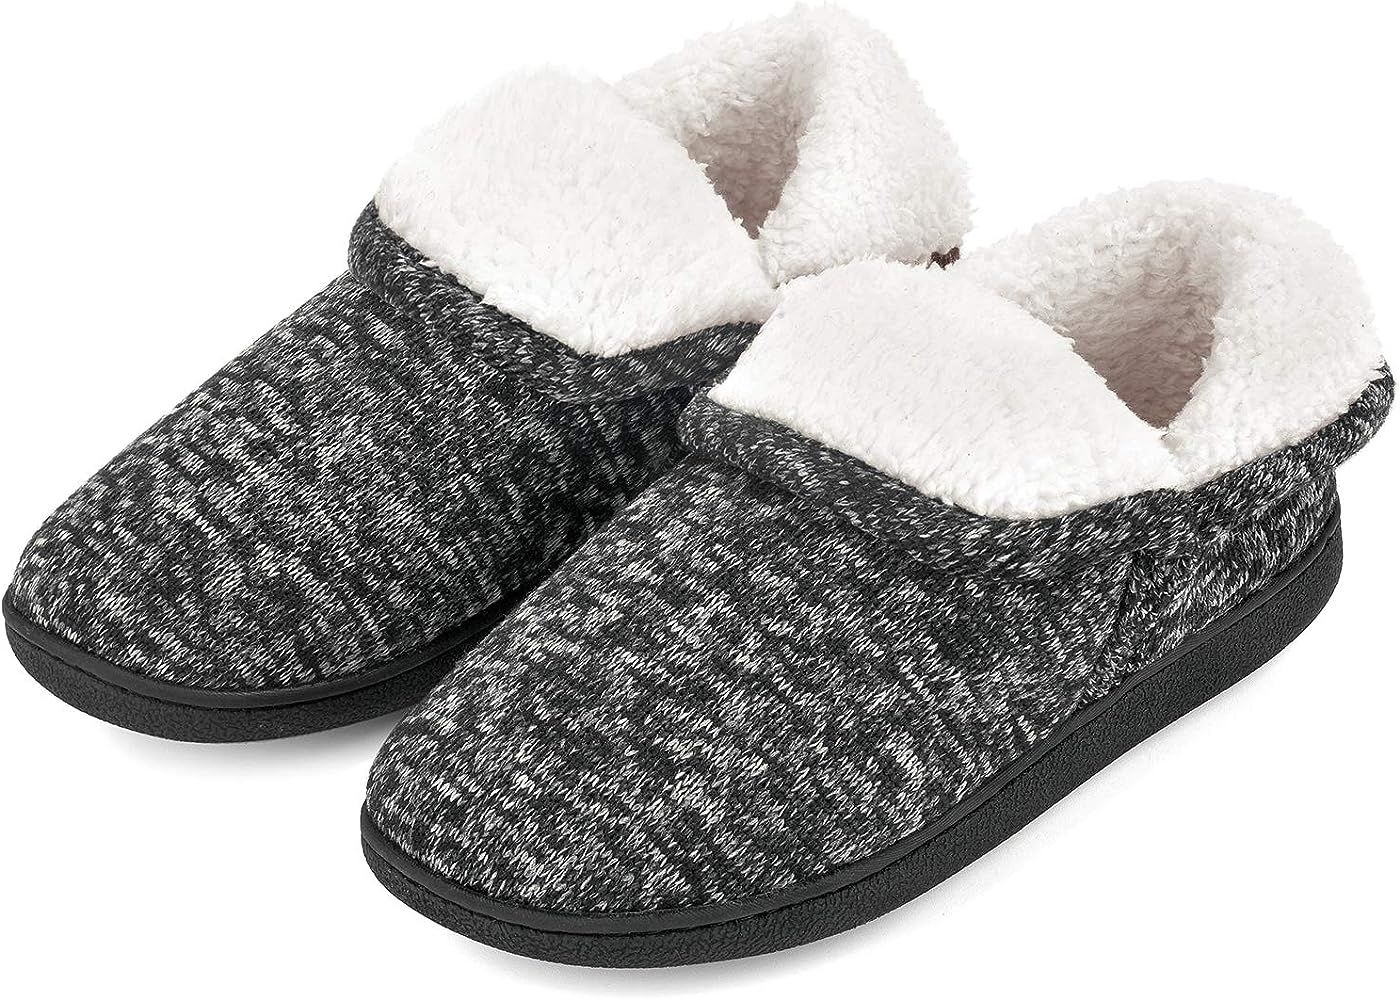 Women's Fuzzy Slippers Boots Memory Foam Booties House Shoes Indoor Outdoor | Amazon (US)